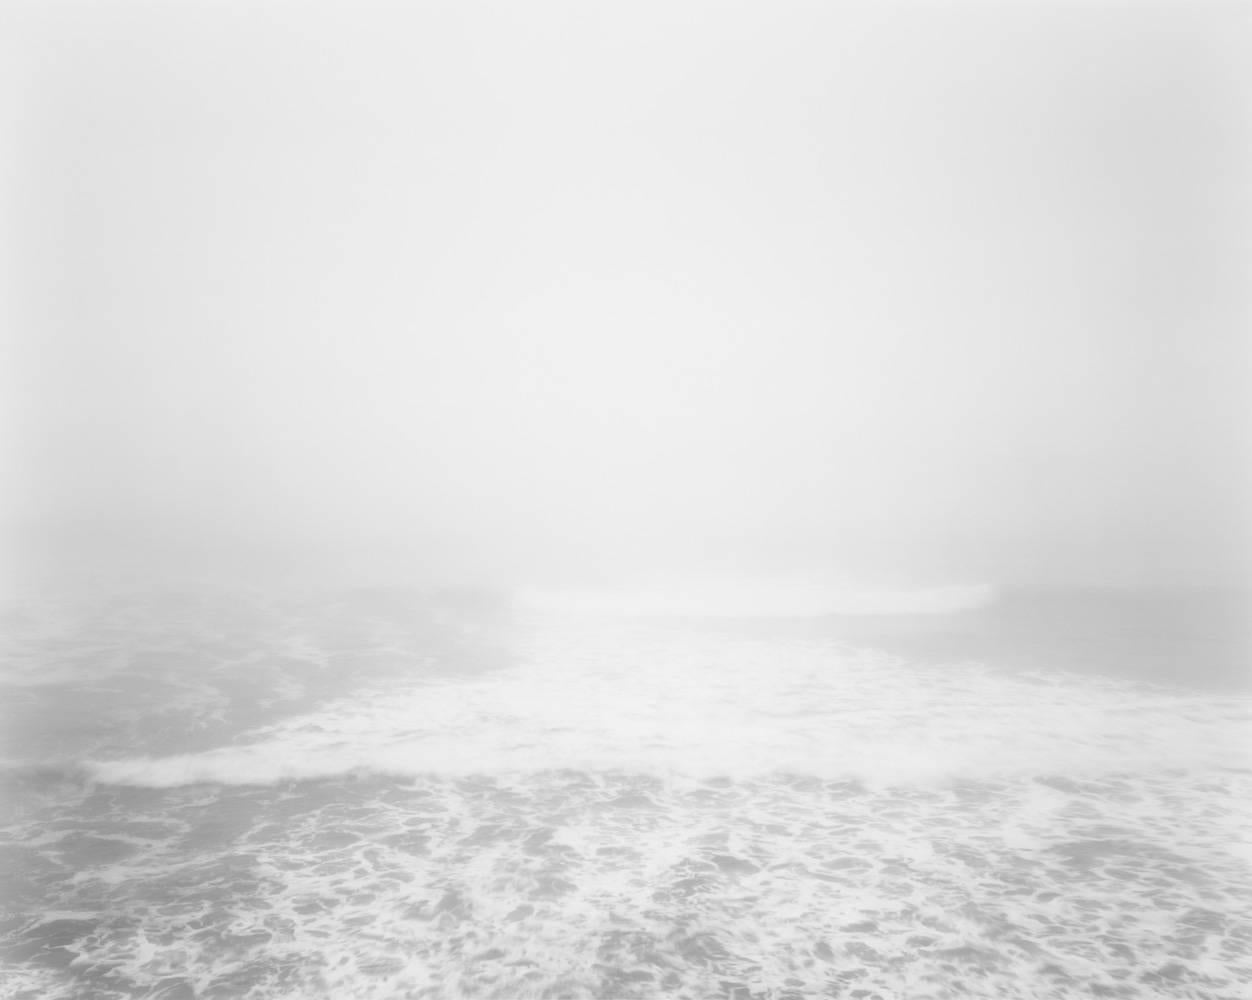 Chip Hooper Black and White Photograph – Winter, Sonomaküste, pazifischer Ozean